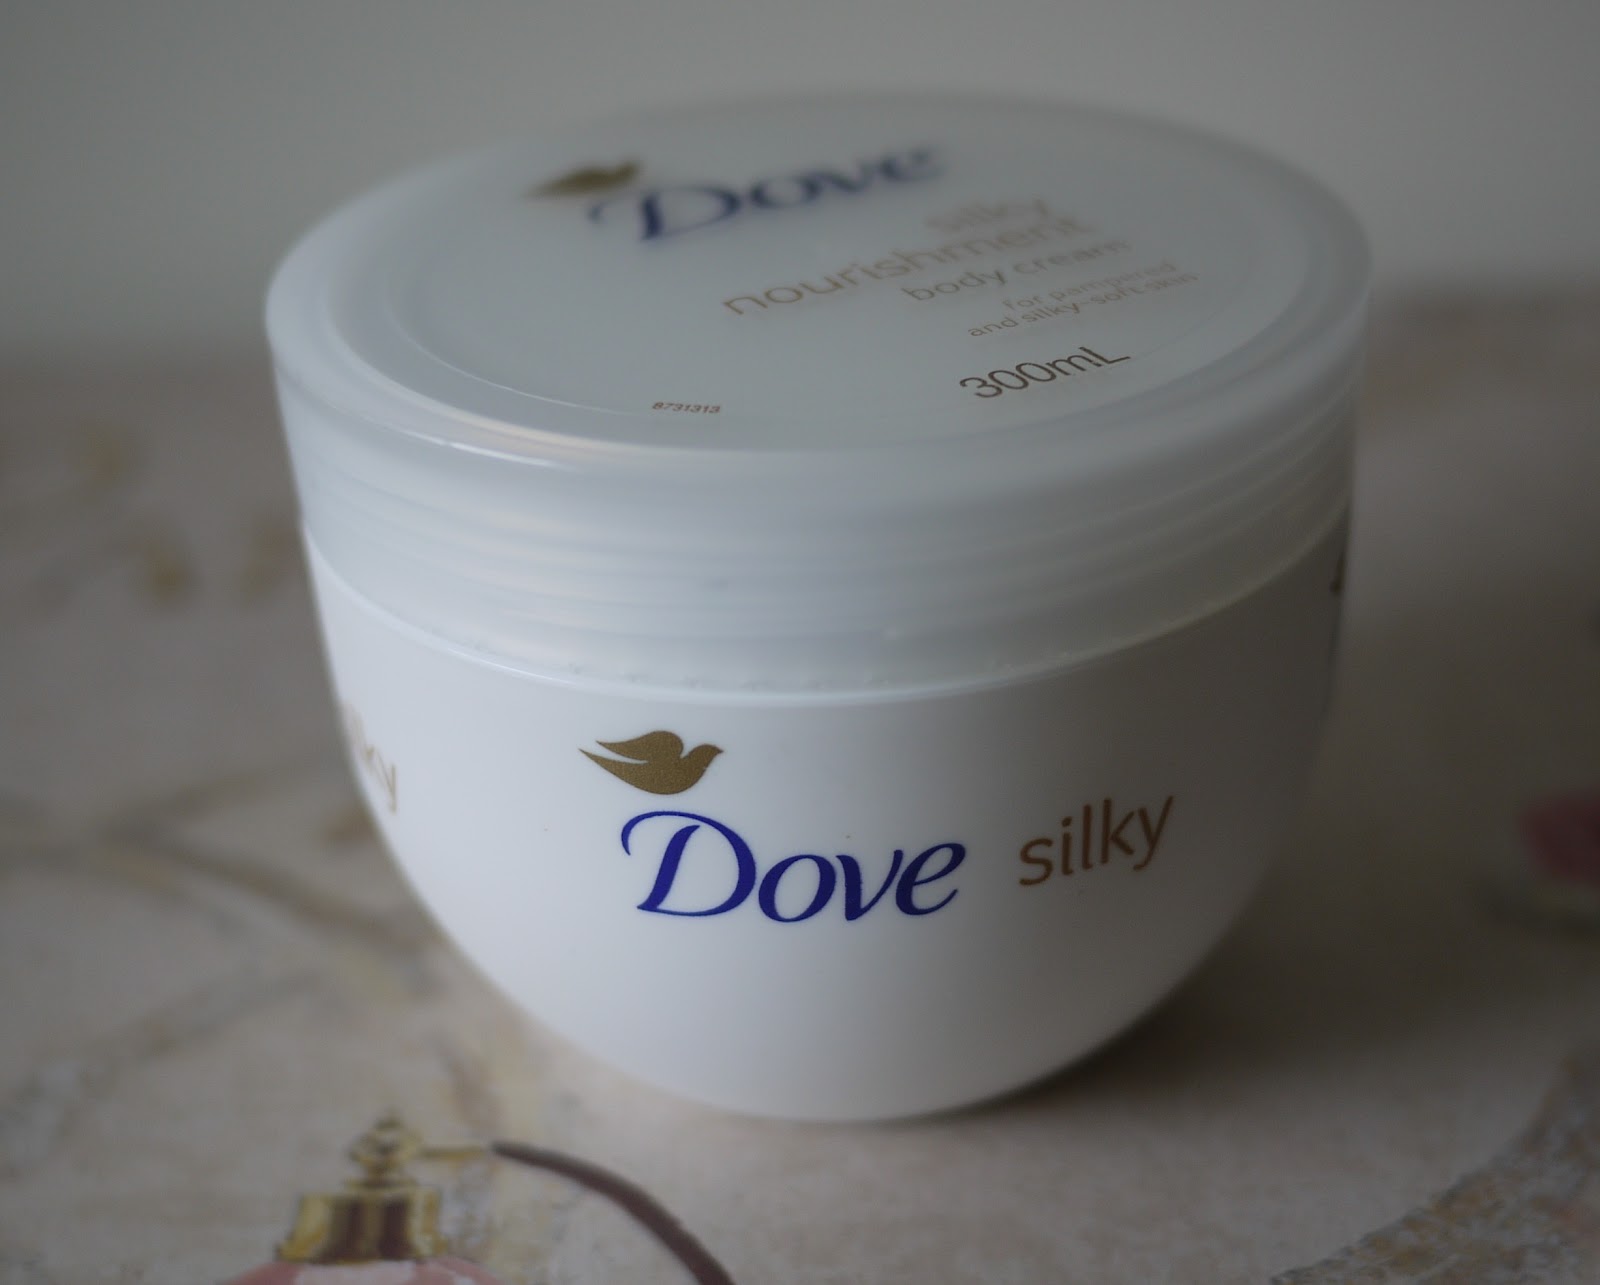 Making up 4 my age: Dove Silky Nourishment Cream